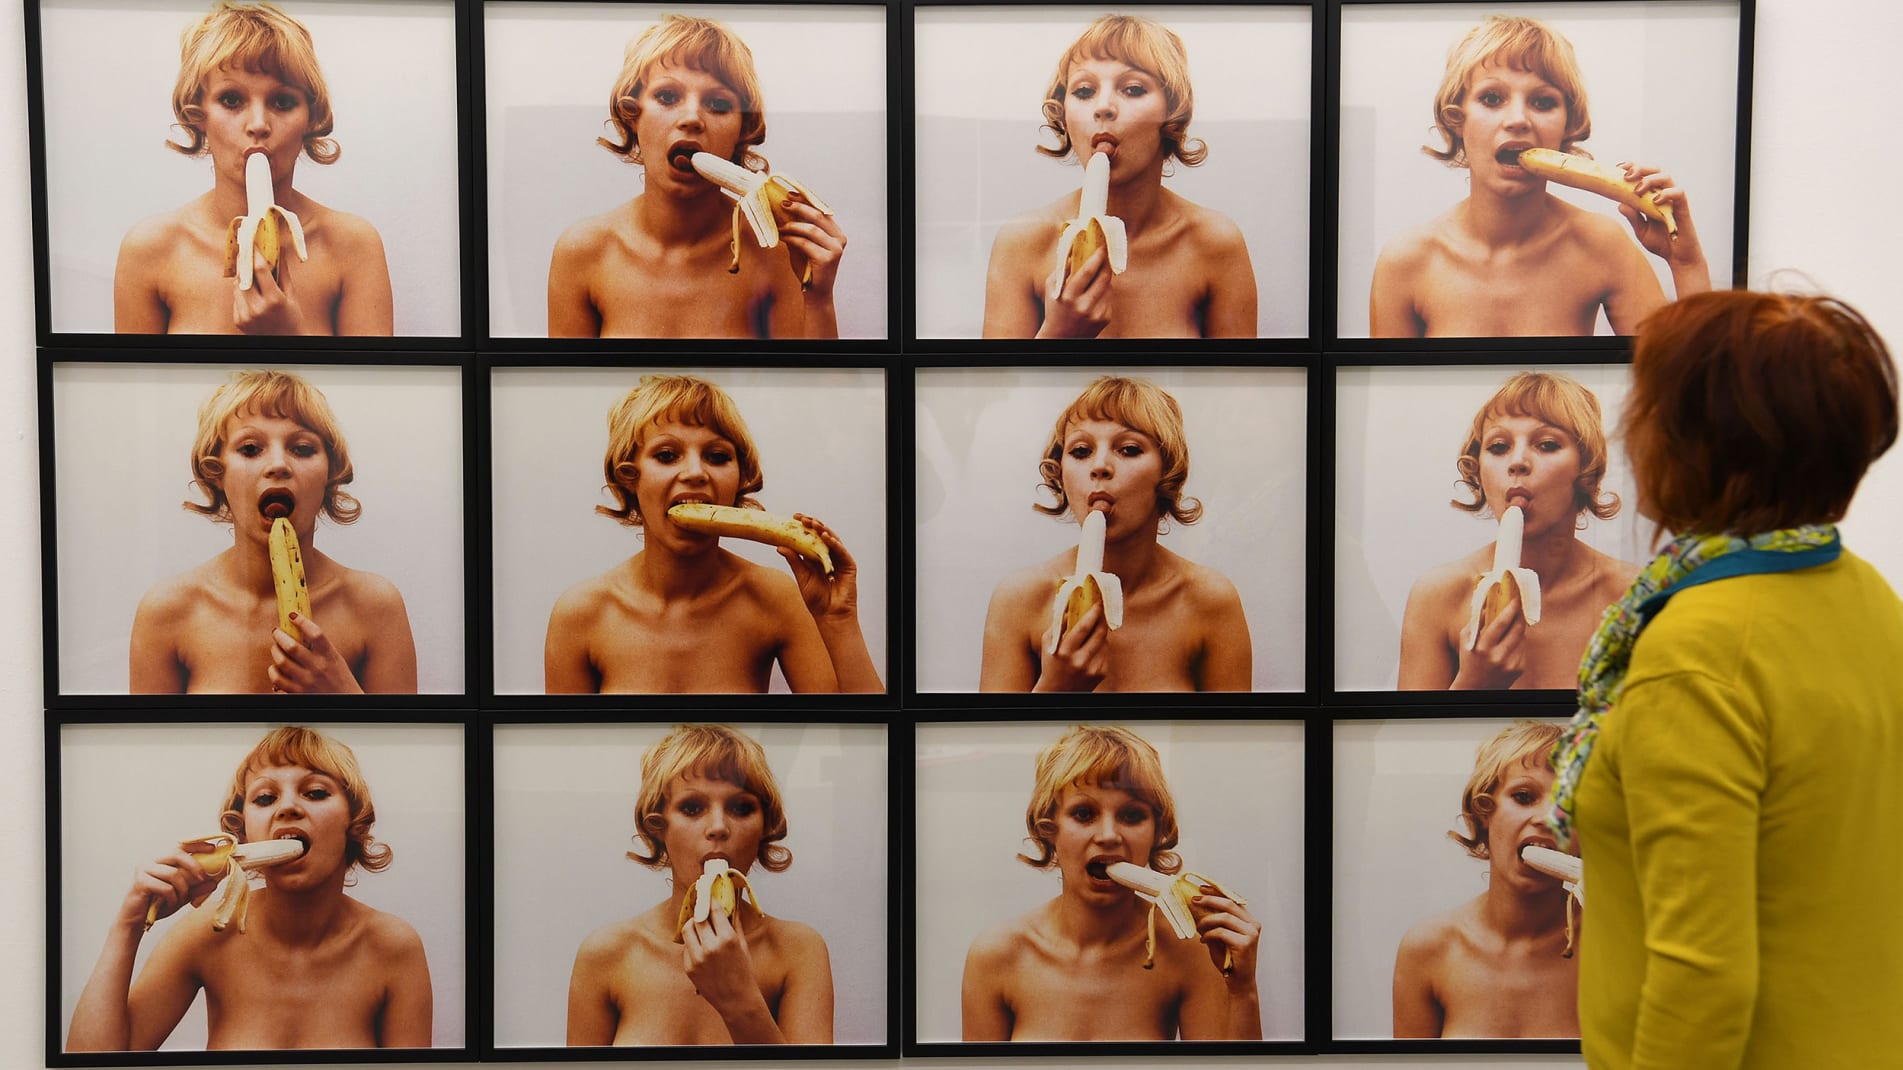 הפולנים יצאו לרחובות, לאחר שהמוזיאון החרים יצירת אמנות פמיניסטית של אשה אוכלת בננה